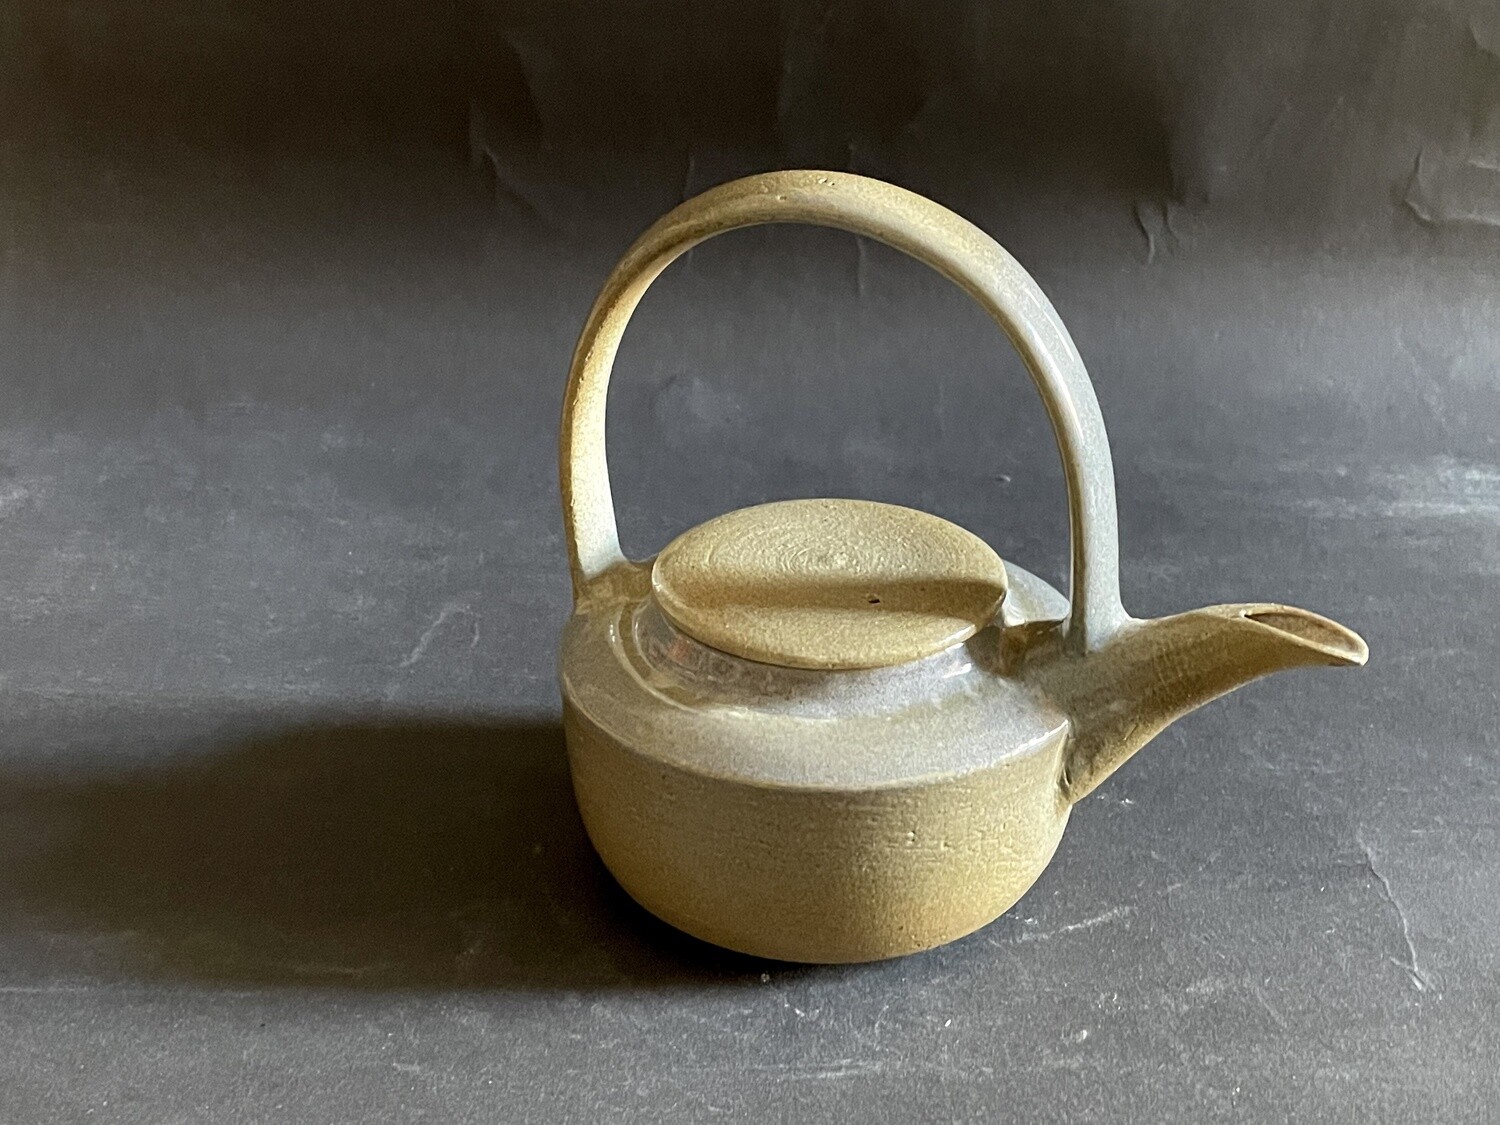 Arch-handle teapot